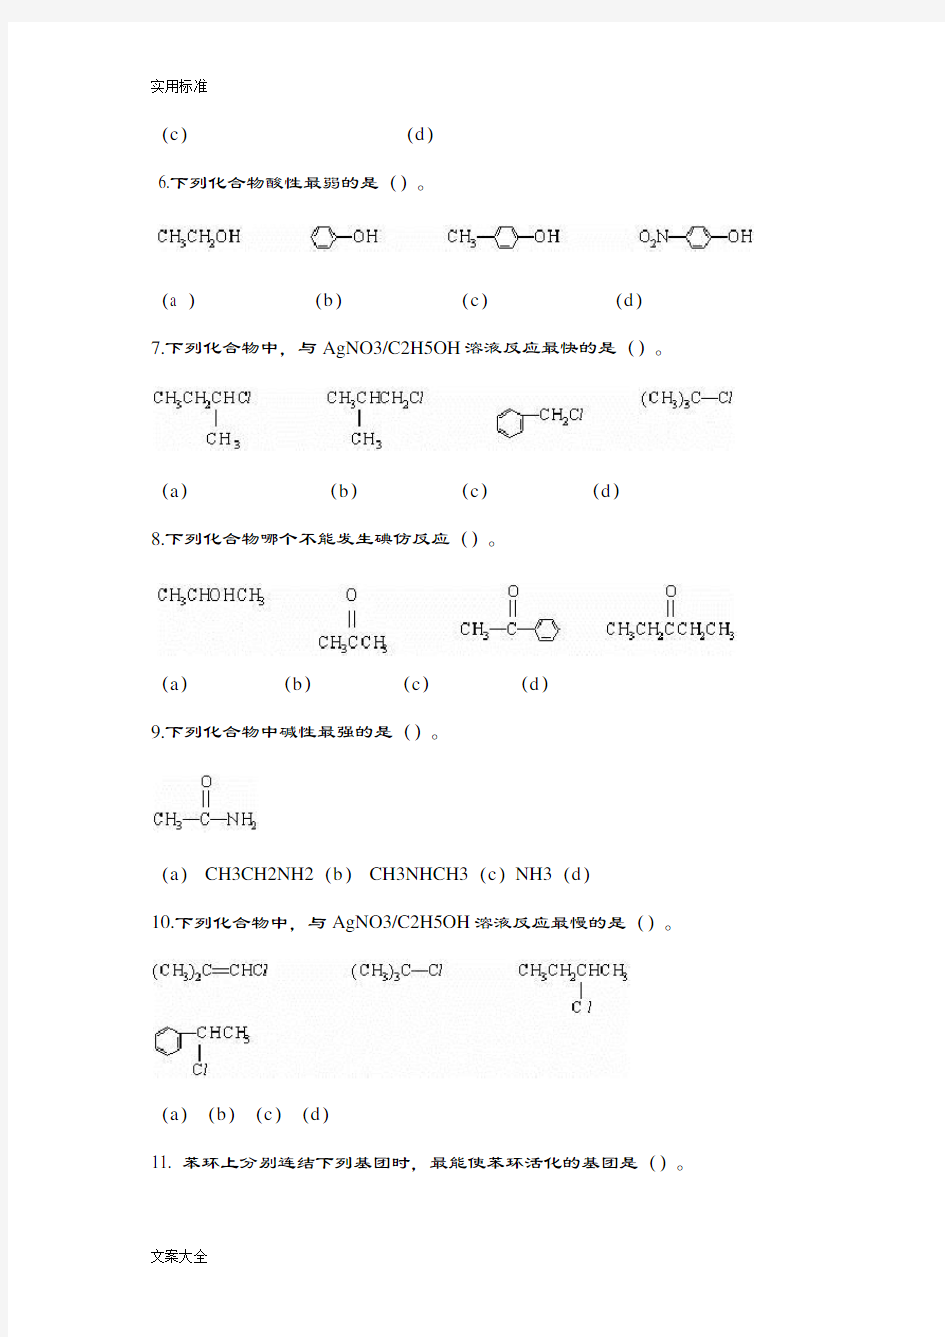 《浙江大学远程教育学院有机化学(A)》课程作业(必做)